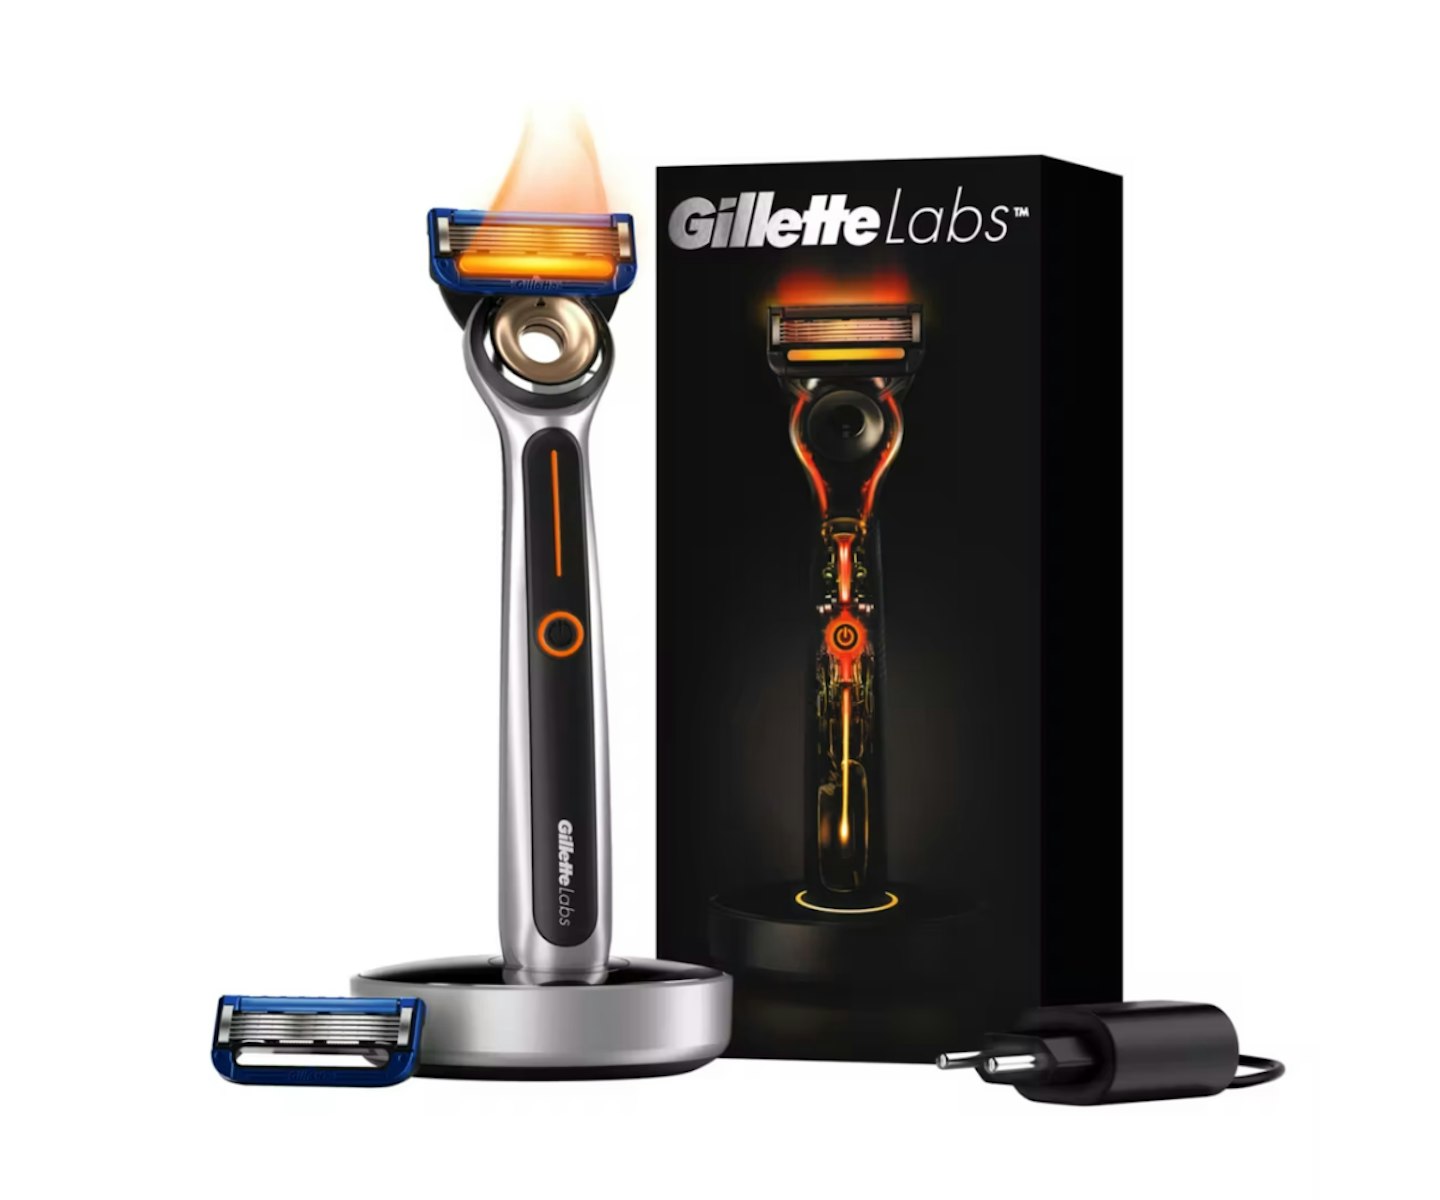 GilletteLabs Heated Razor For Men Starter Kit